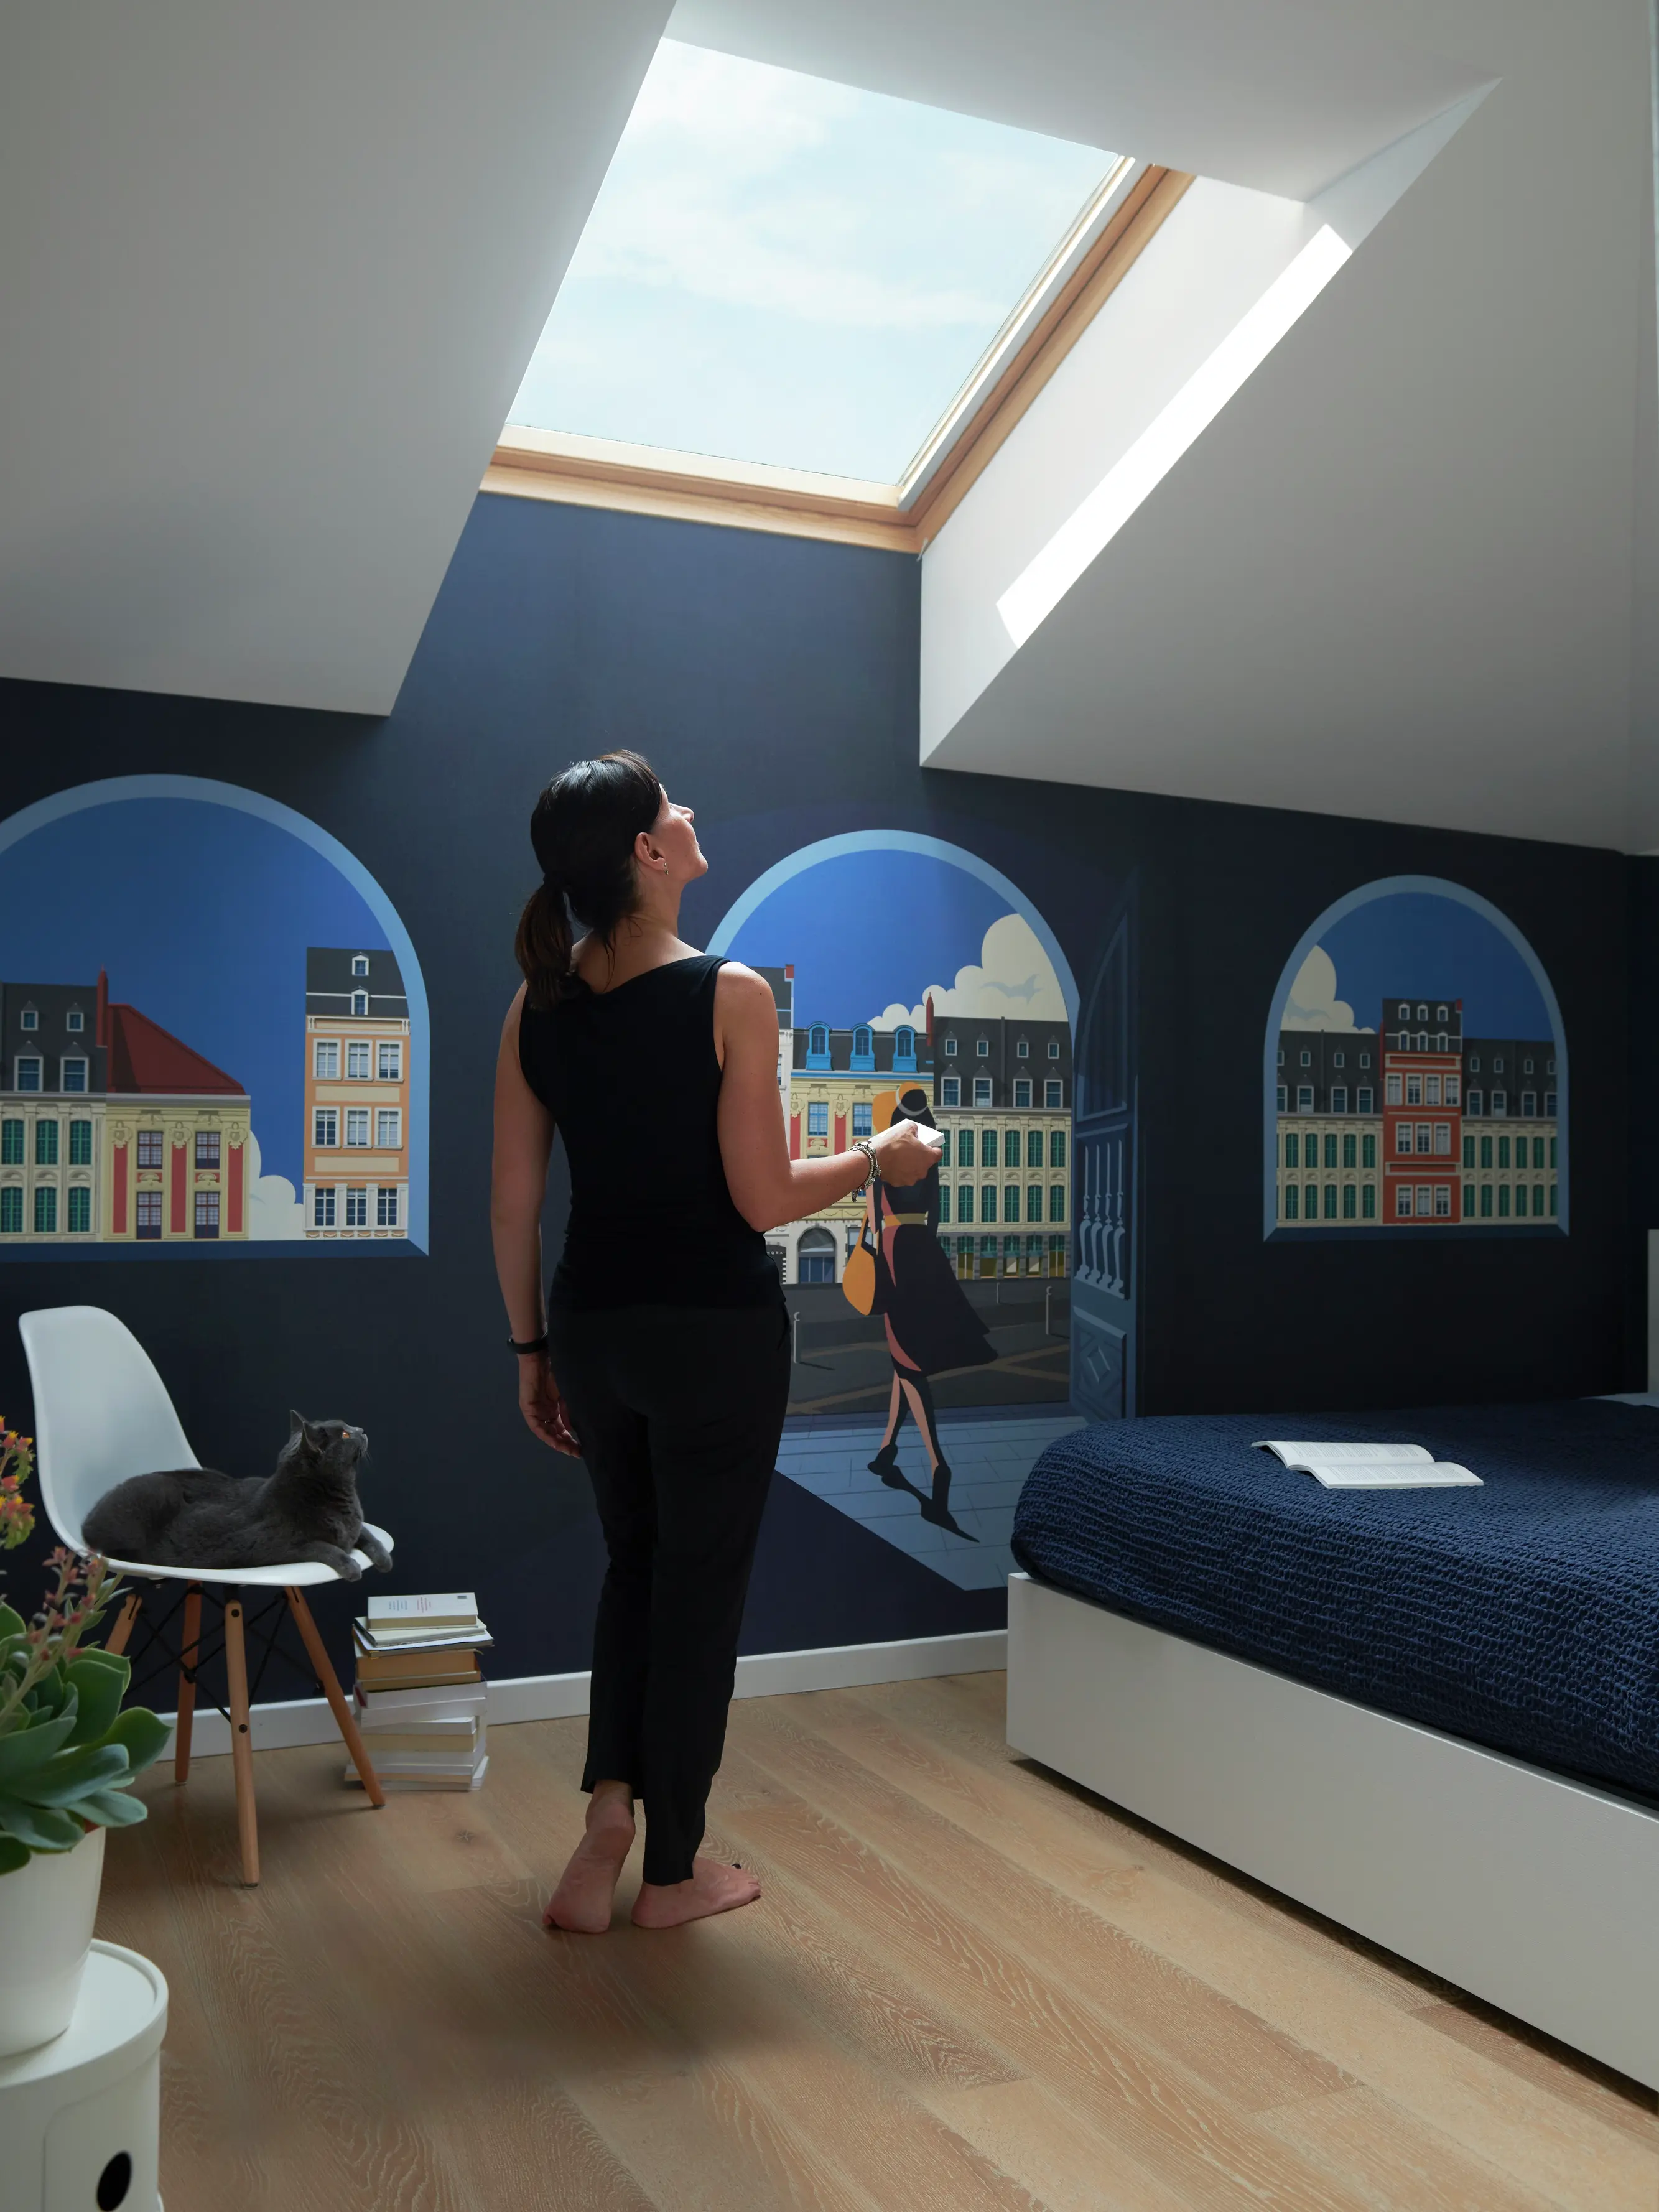 Camera da letto con murale di panorama urbano, finestra per tetti VELUX, gatto sulla sedia e copriletto blu navy.